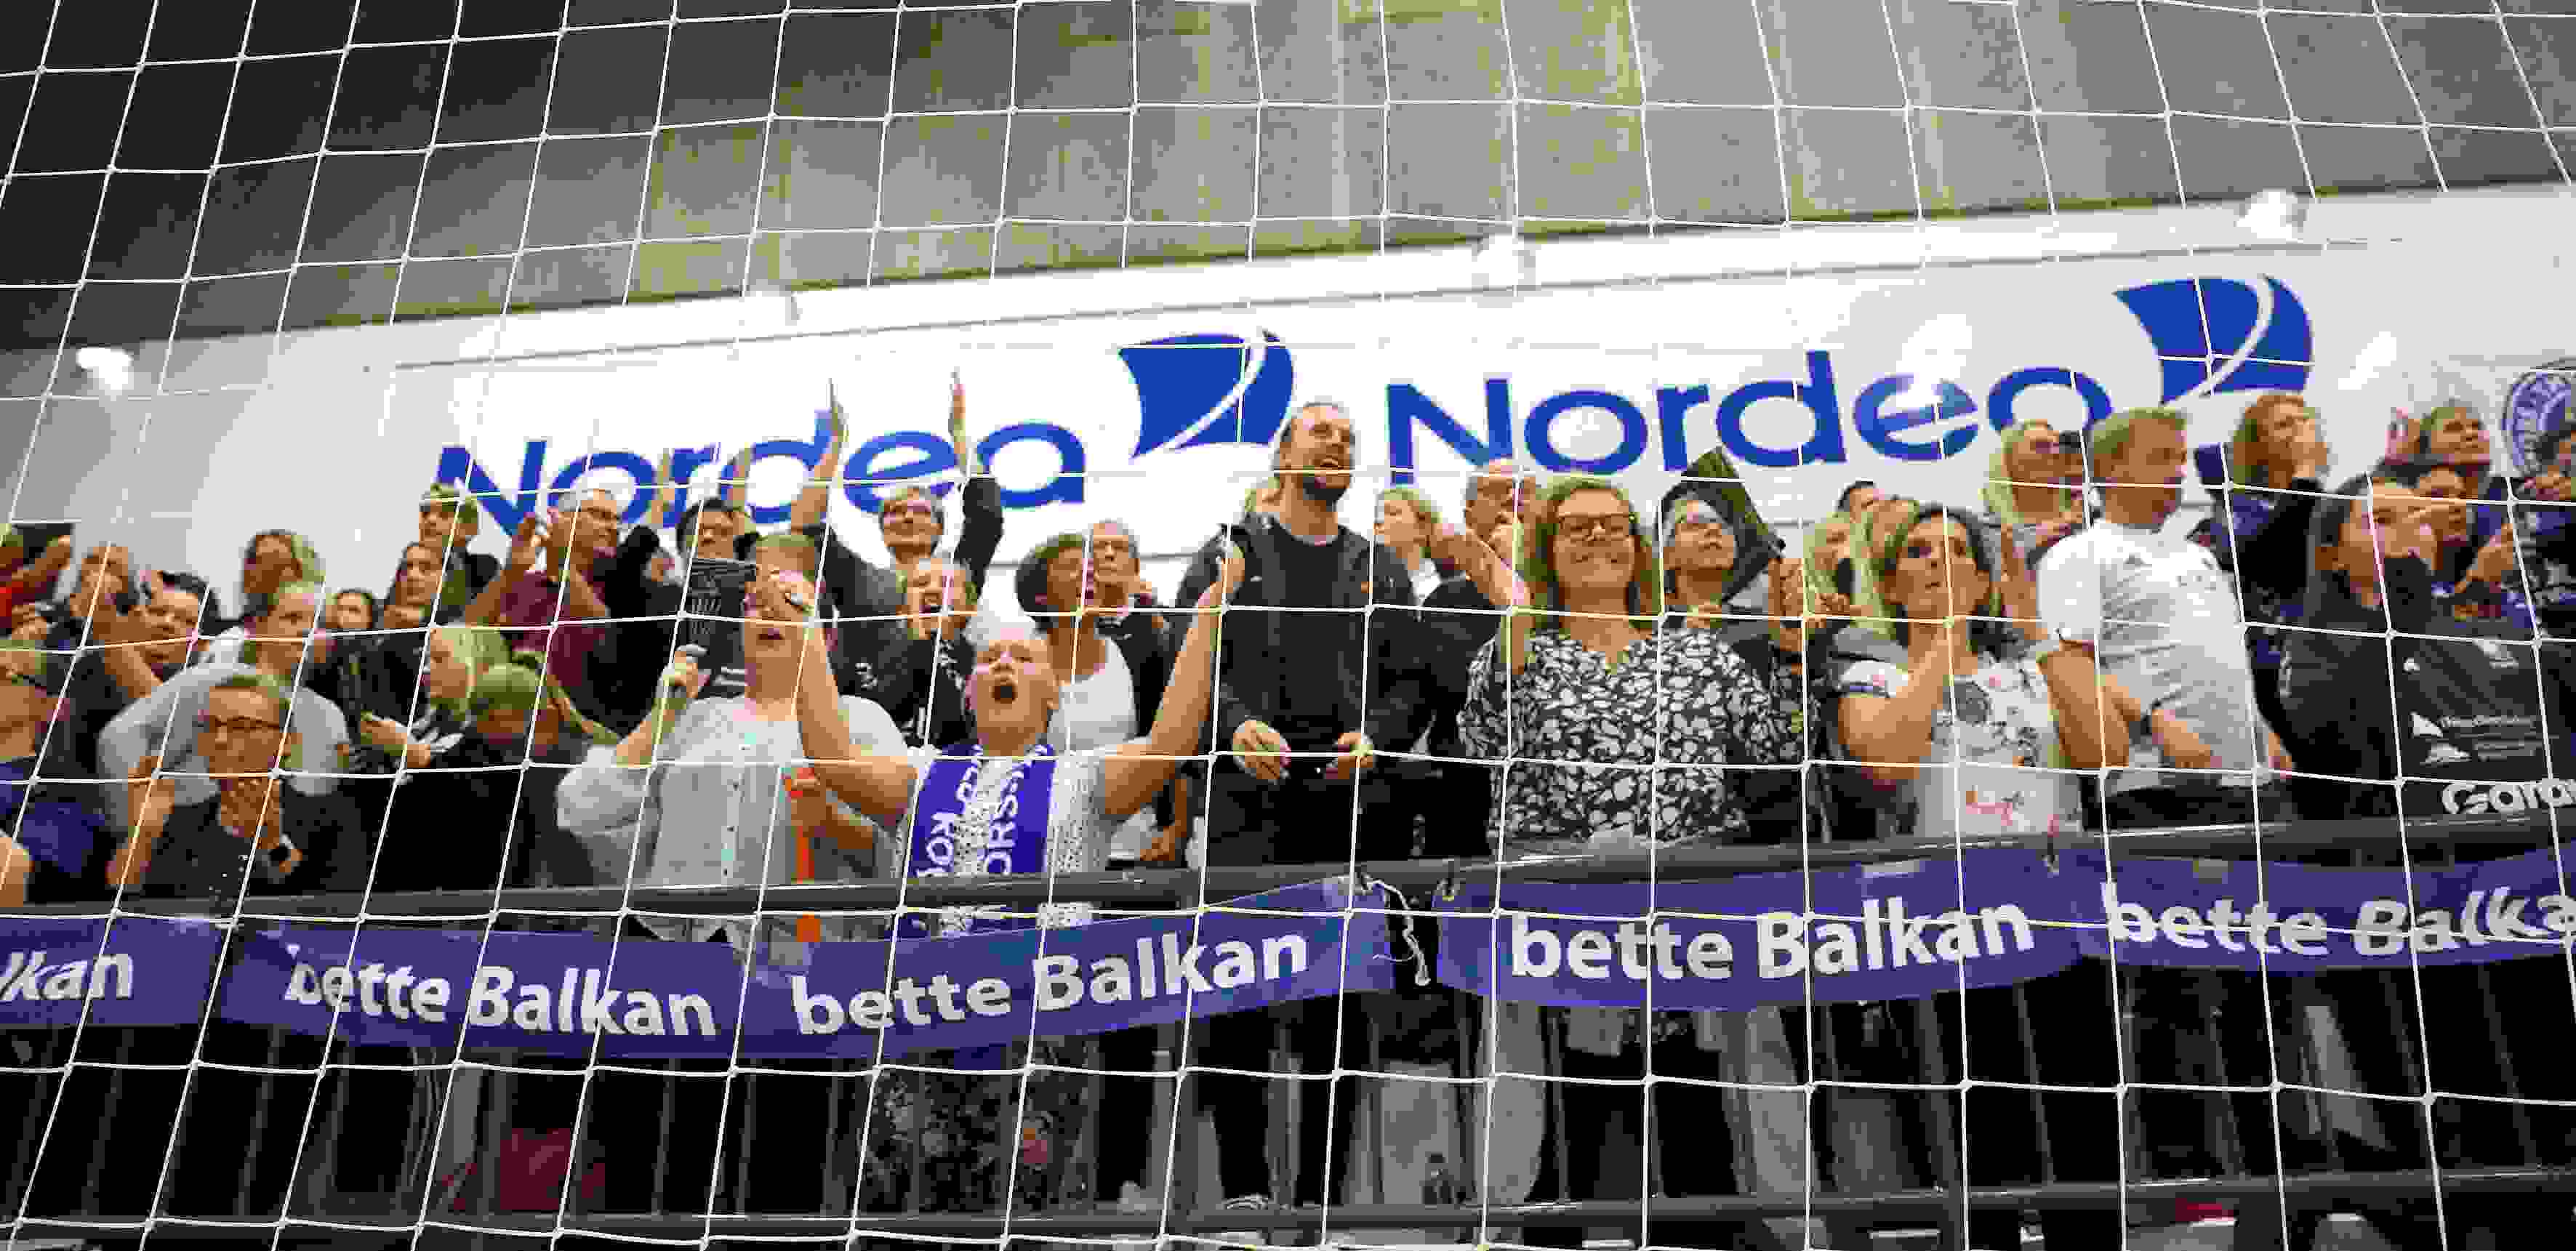 Bette Balkan (4).jpg